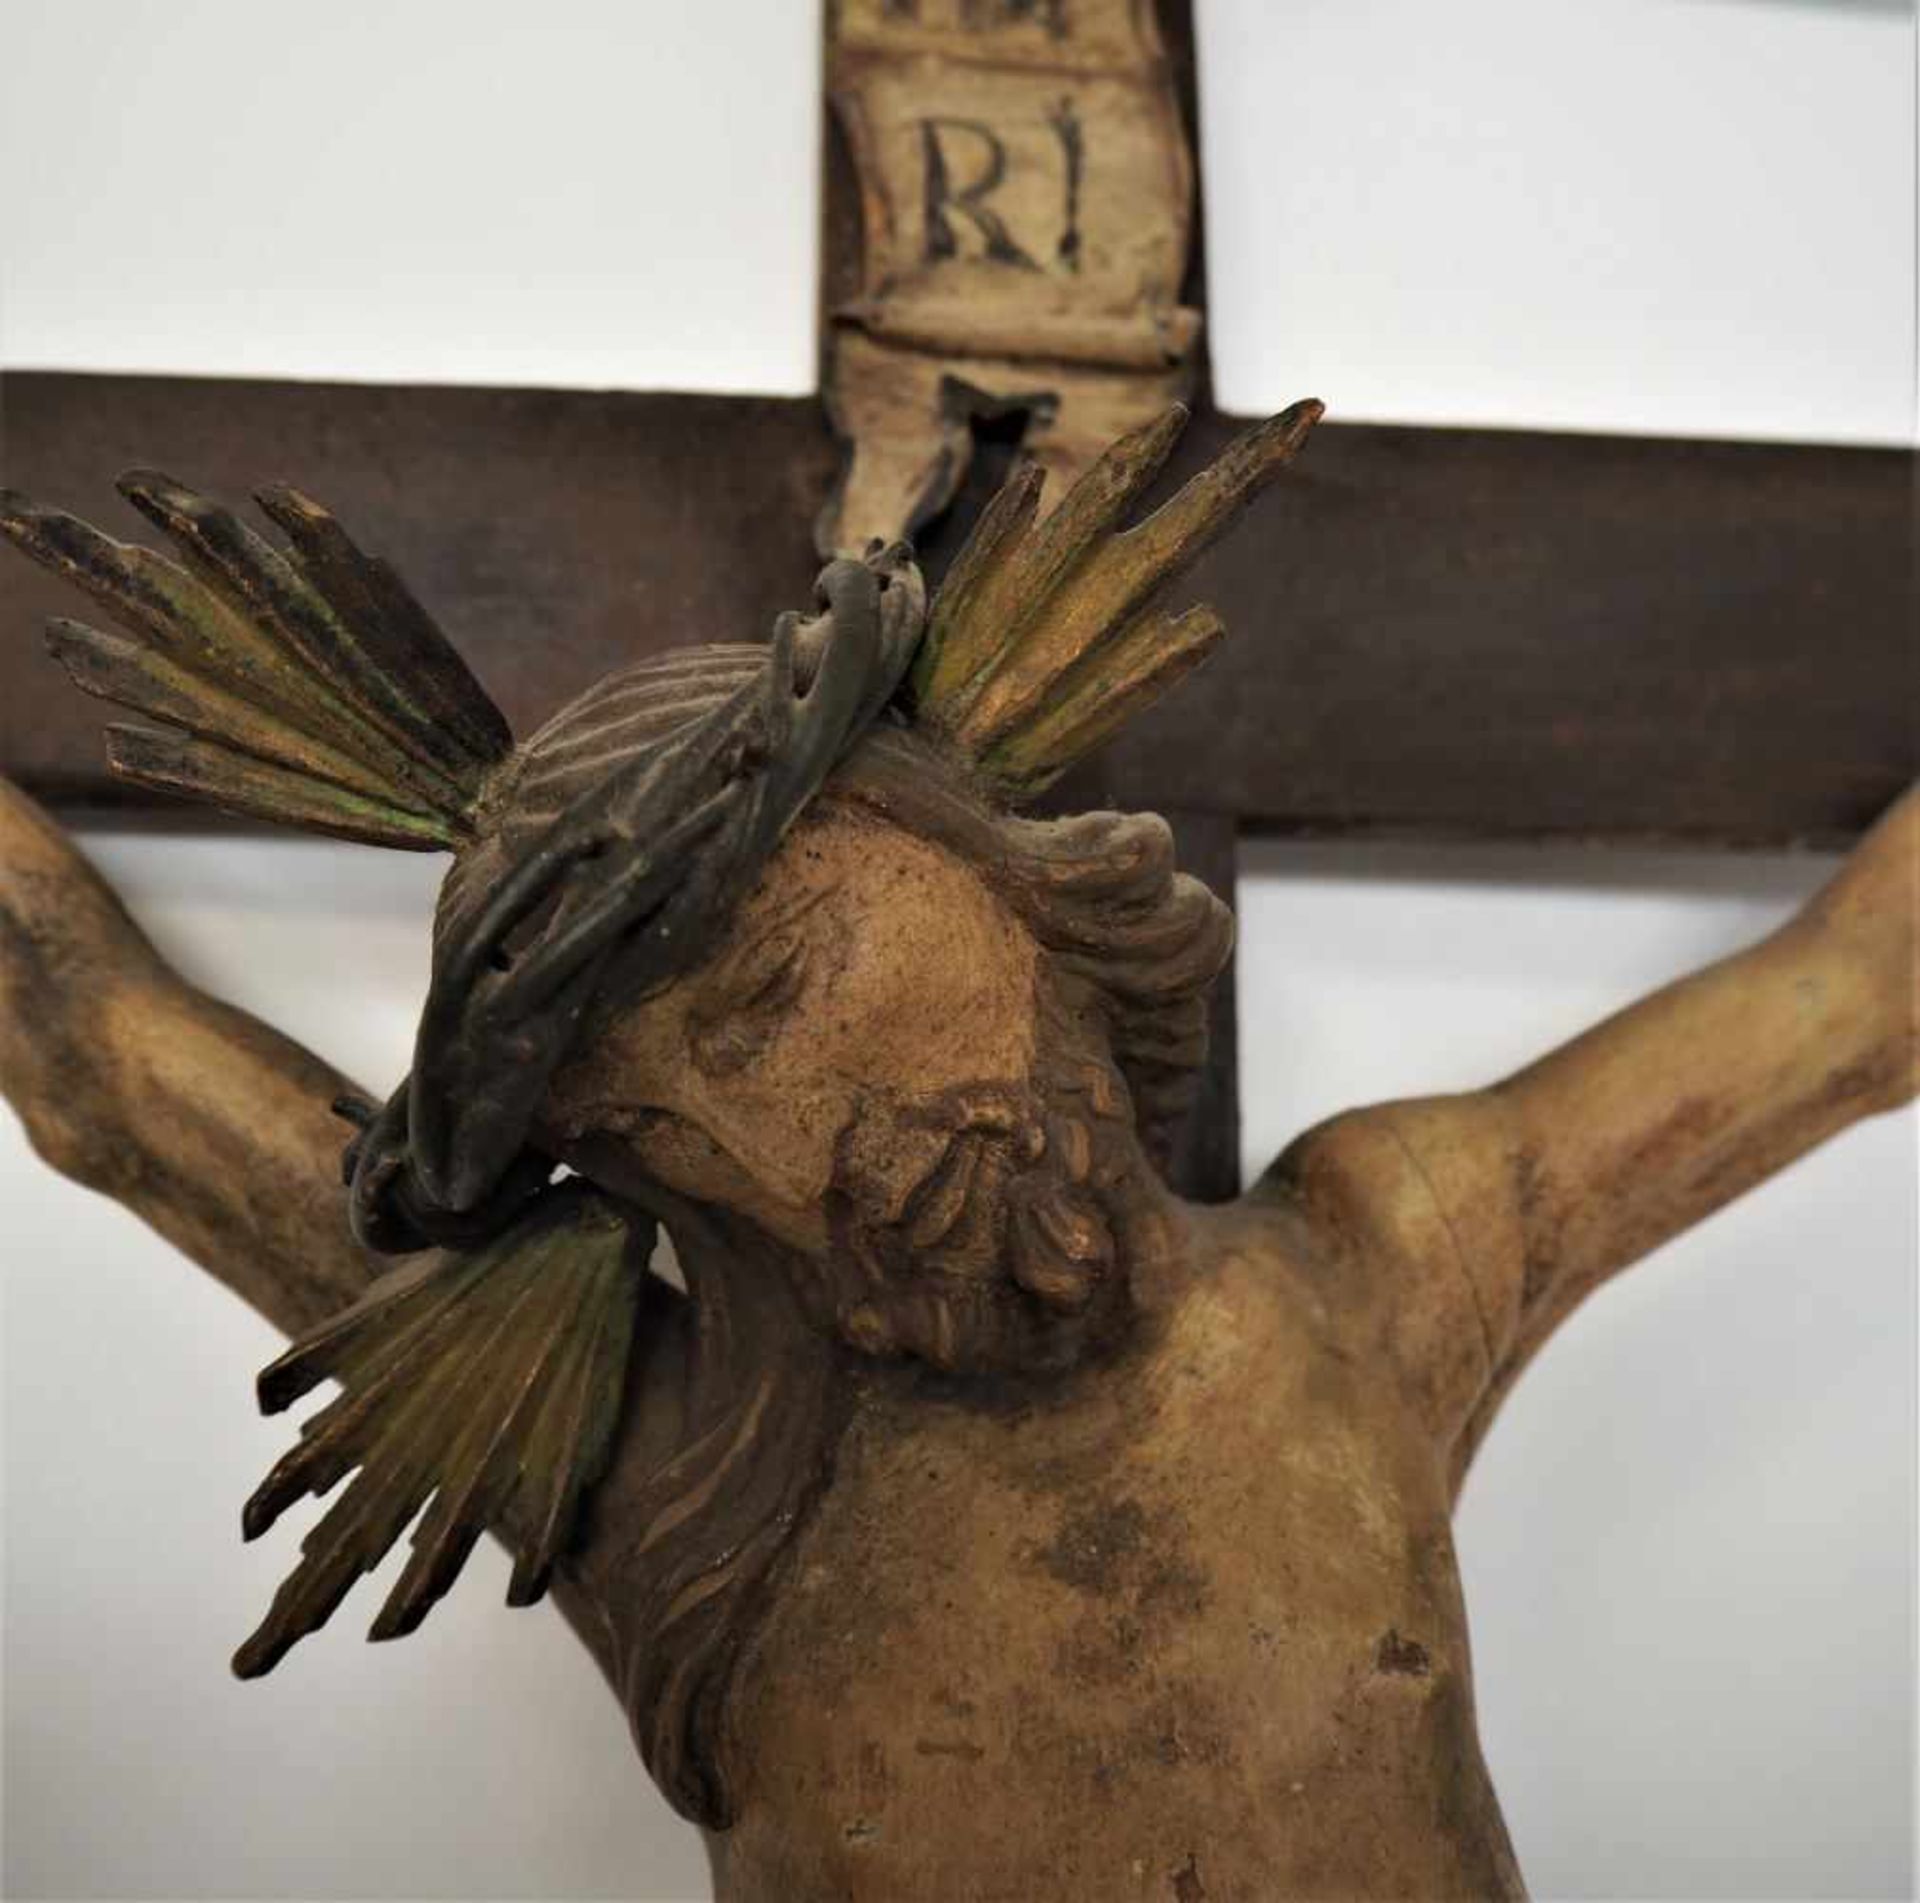 Kruzifix süddeutsch, wohl mitte 18. Jh.Holzkreuz gefasst und dunkel lasiert, profilierte Enden. - Bild 2 aus 3